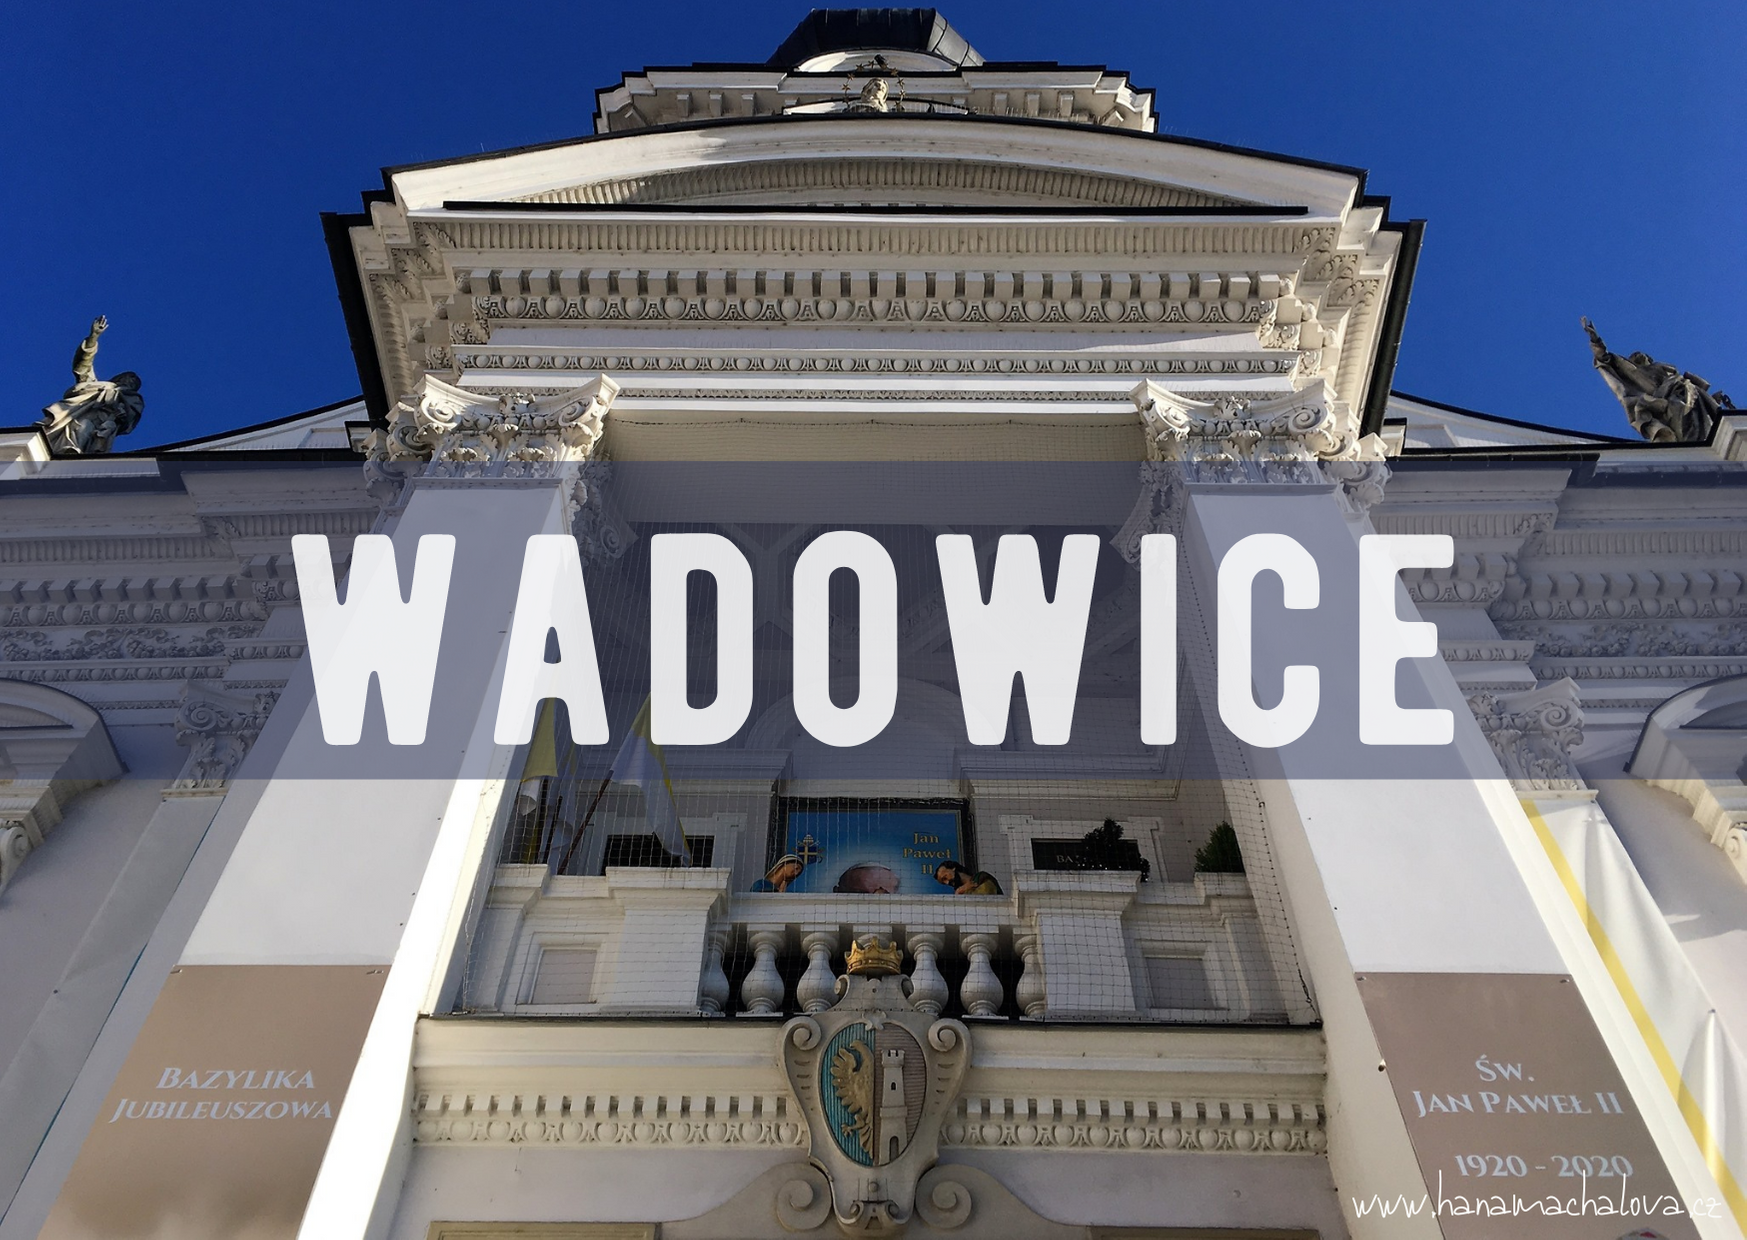 Wadowice a UNESCO Kalwaria Zebrzydowska 